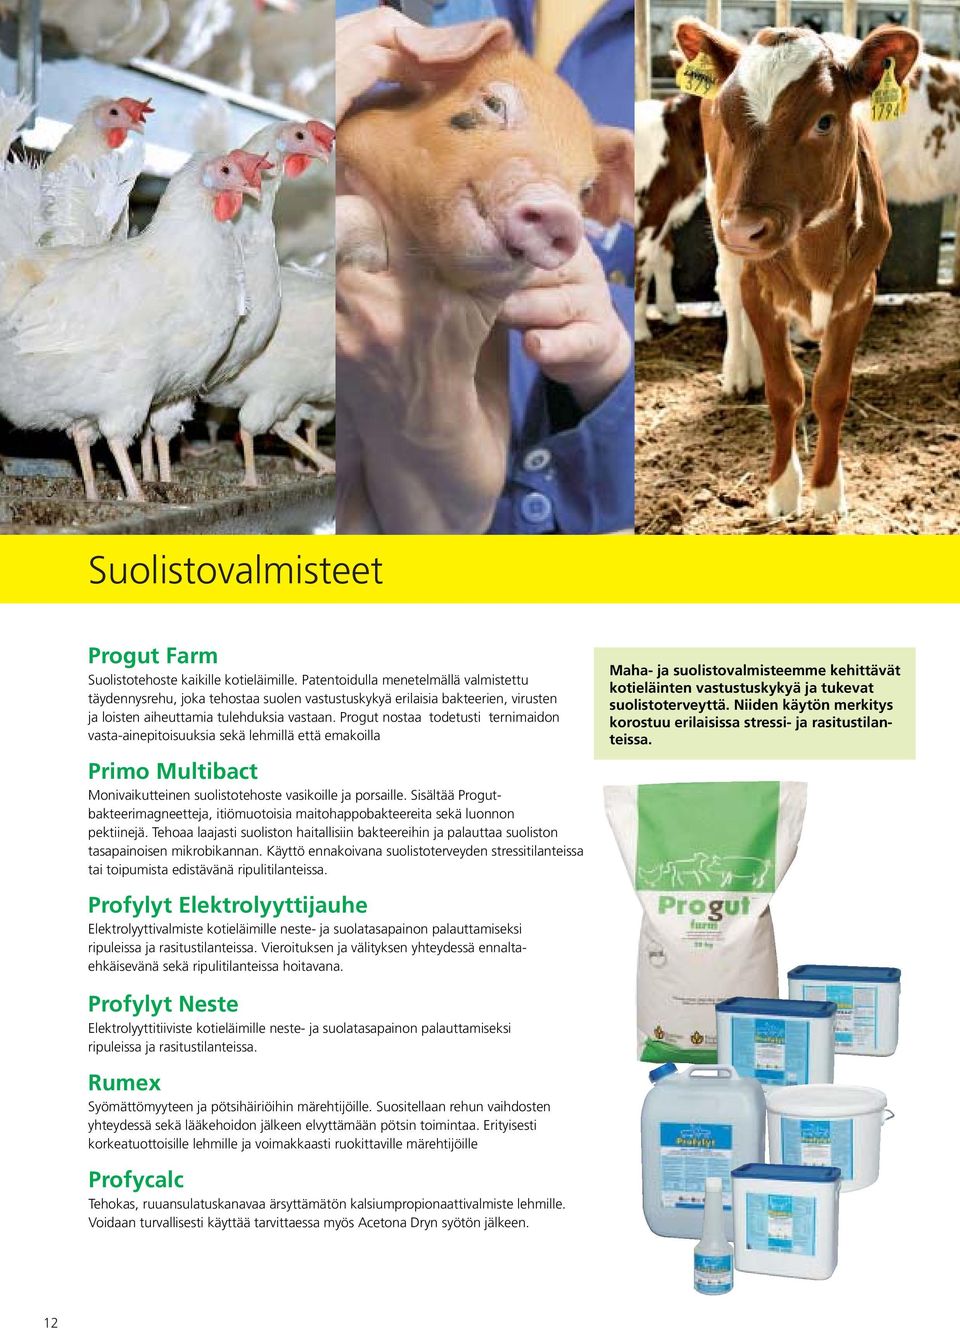 Progut nostaa todetusti ternimaidon vasta-ainepitoisuuksia sekä lehmillä että emakoilla Primo Multibact. Monivaikutteinen suolistotehoste vasikoille ja porsaille.